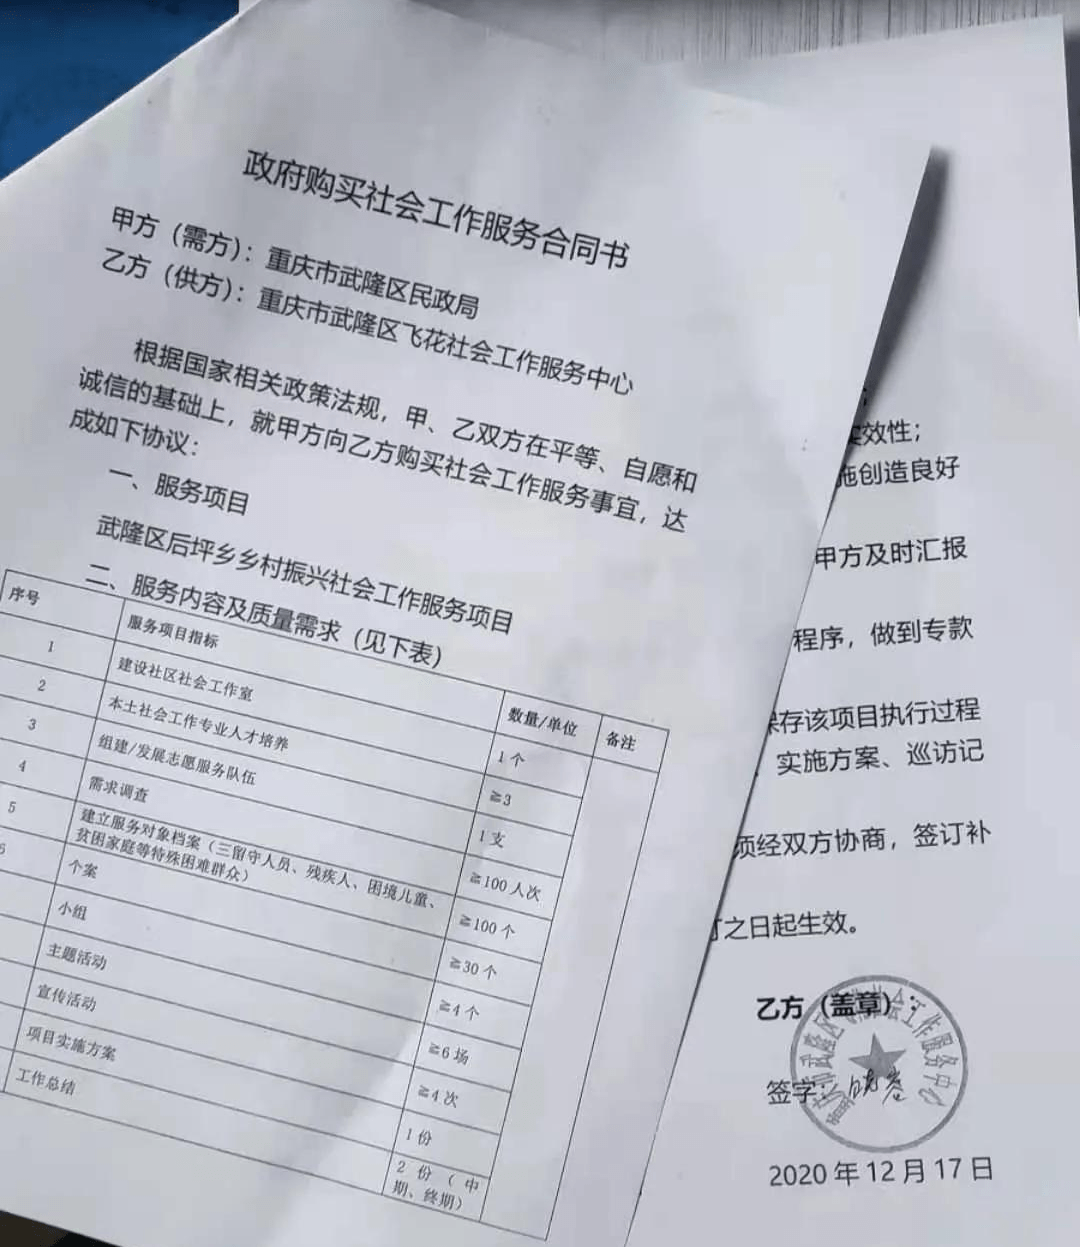 2020年12月18日,重庆市武隆区飞花社会工作服务中心承接的武隆区后坪